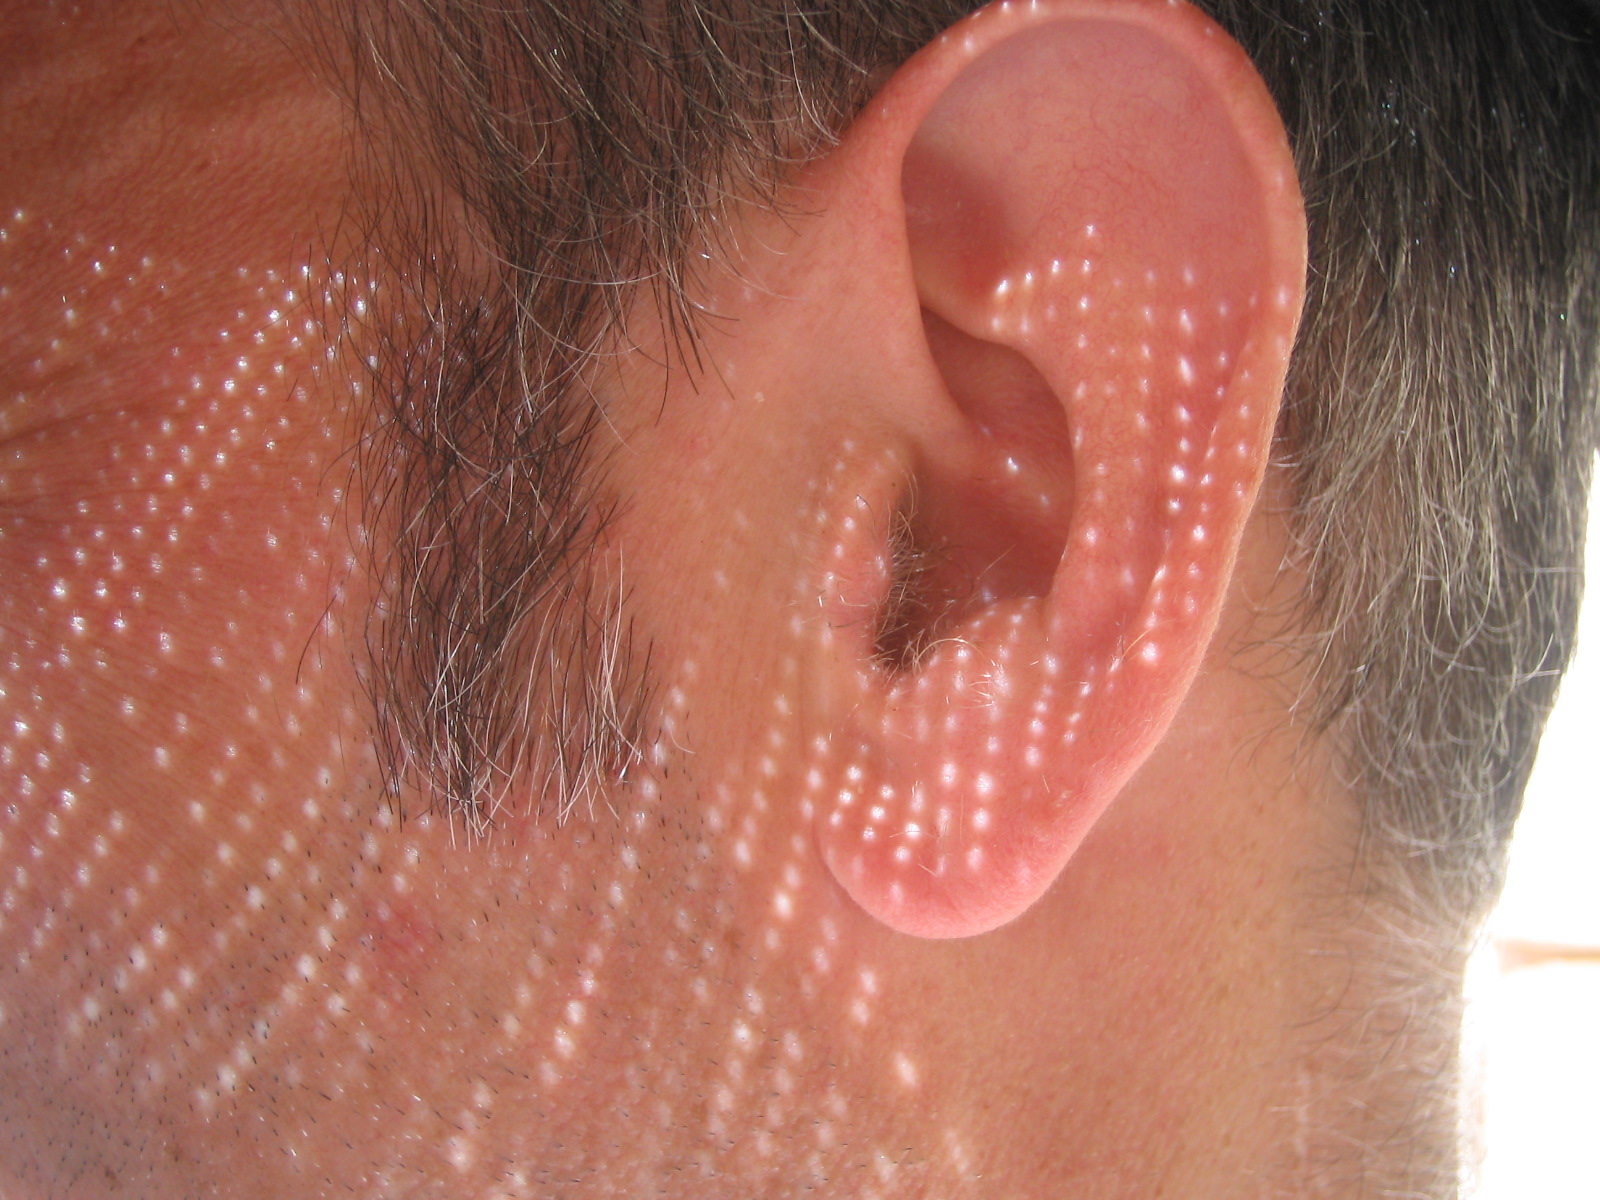 Zbliżenie męskiego ucha, widać też fragment włosów